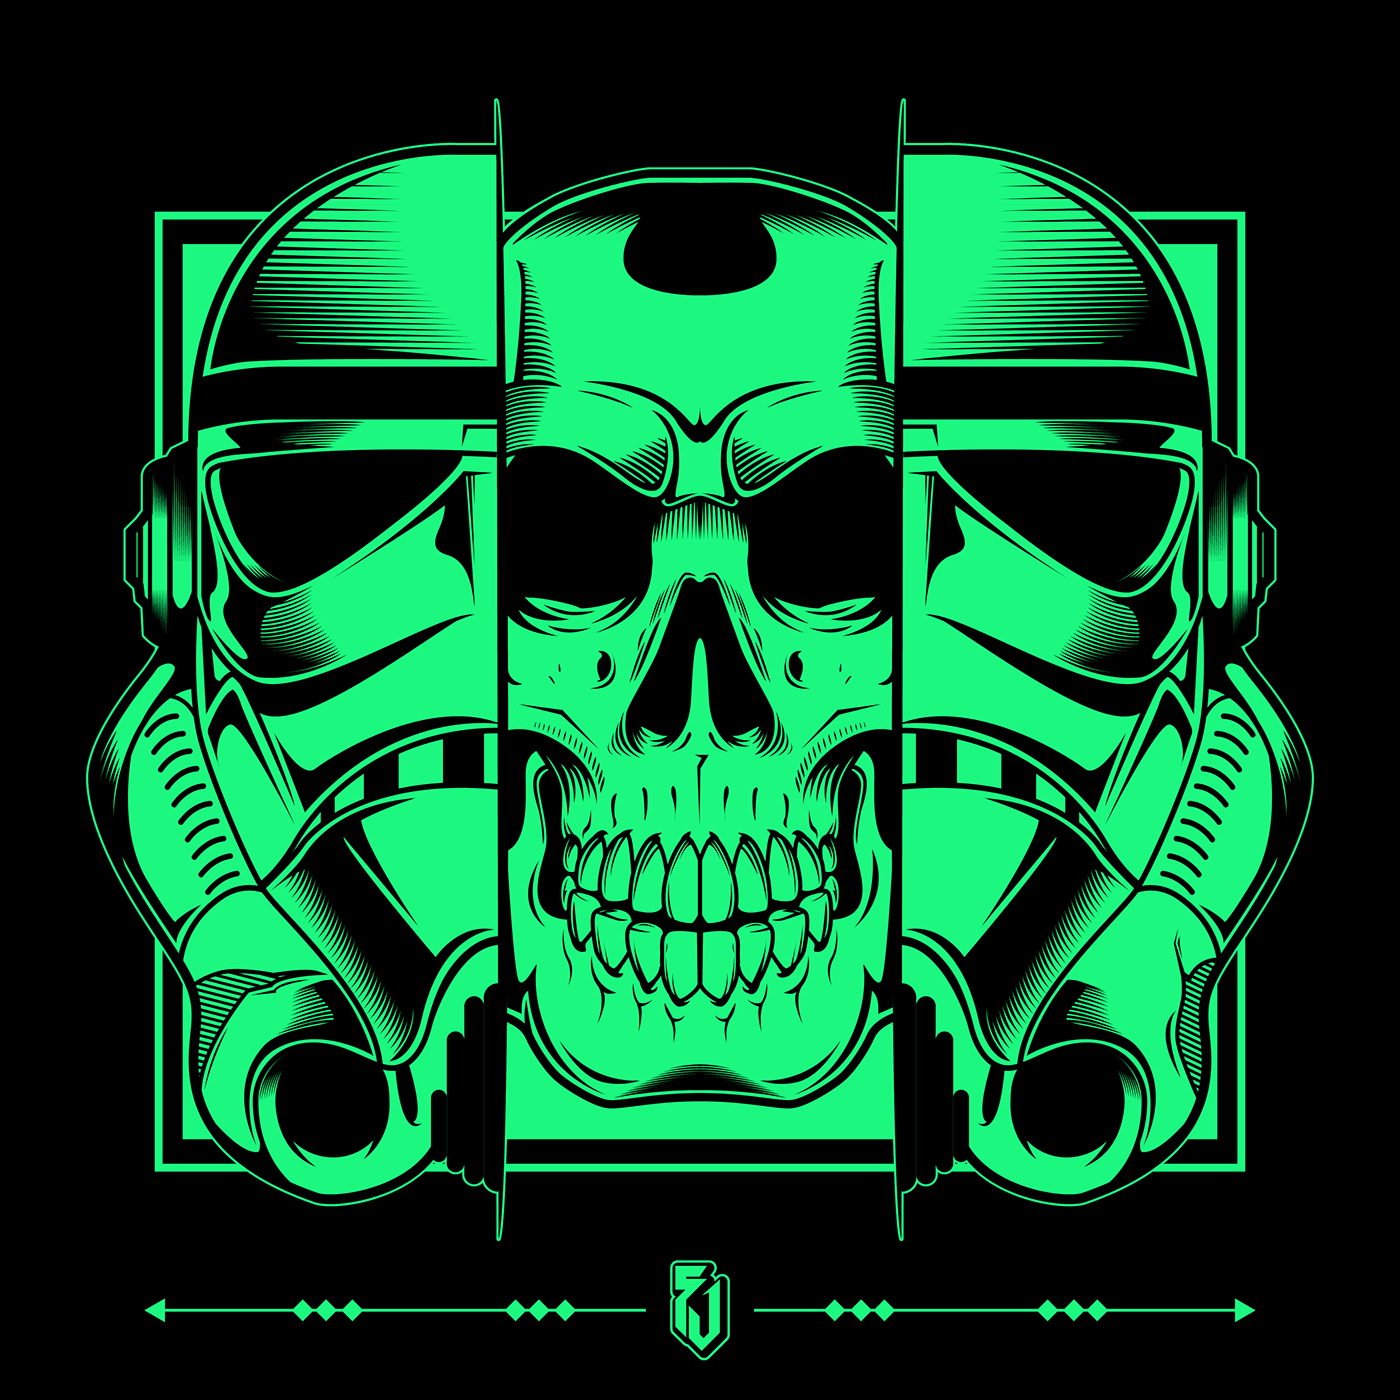 Adobe Portfolio Starwars vector inking skulls storm stormtrooper Empire dig...